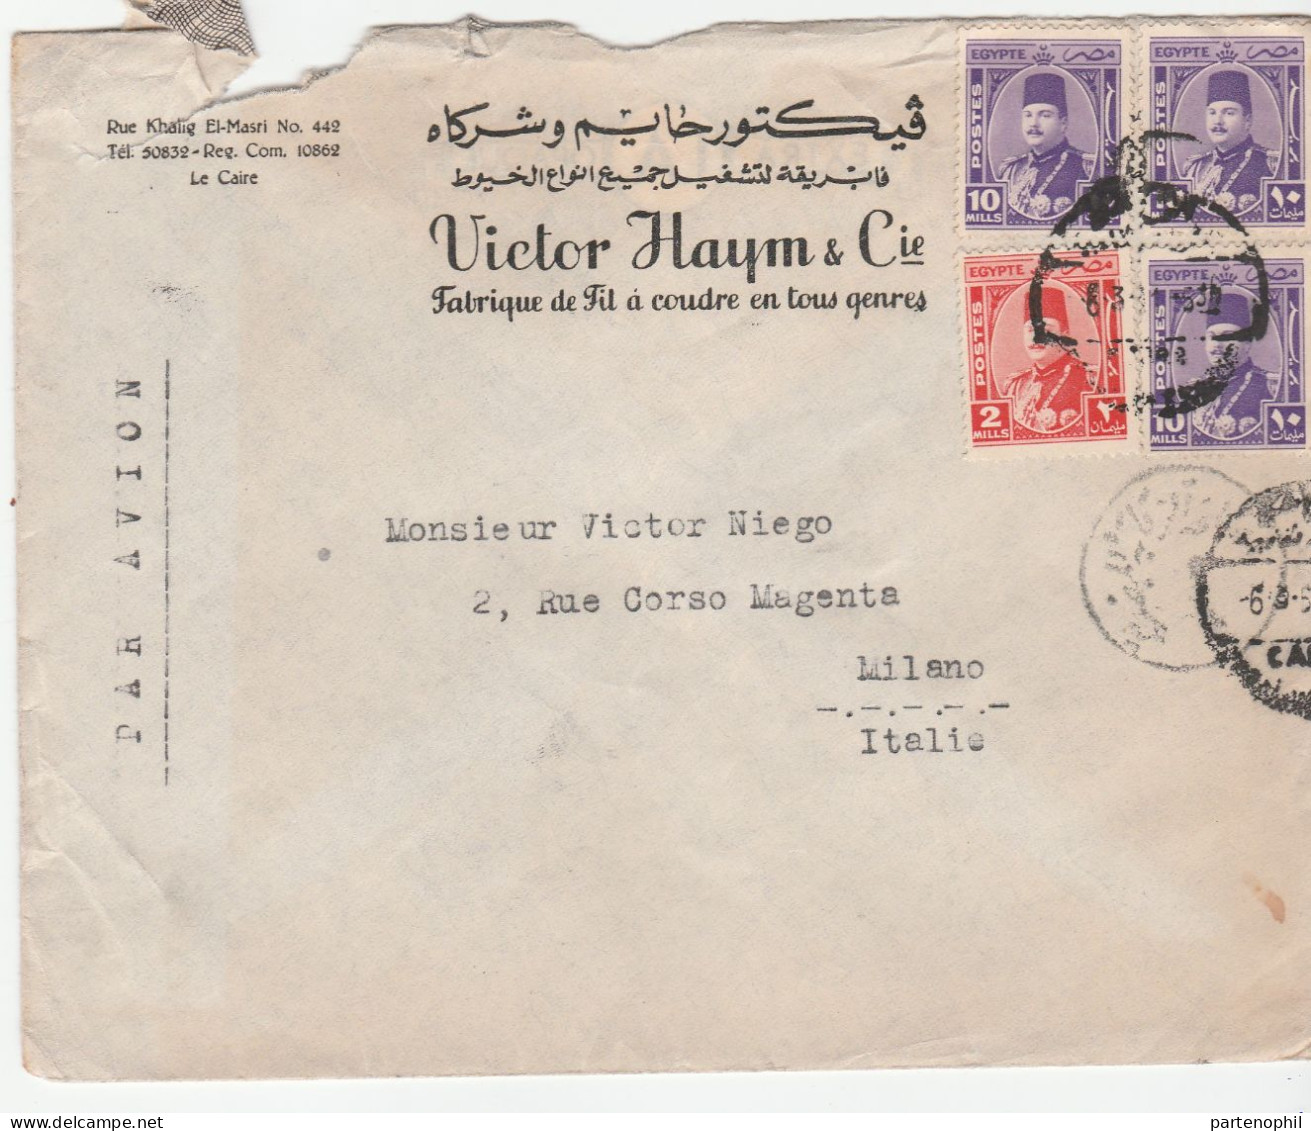 Egypte Aegypthen Egitto 1951  - Postal History  Postgeschichte - Storia Postale - Histoire Postale - Storia Postale